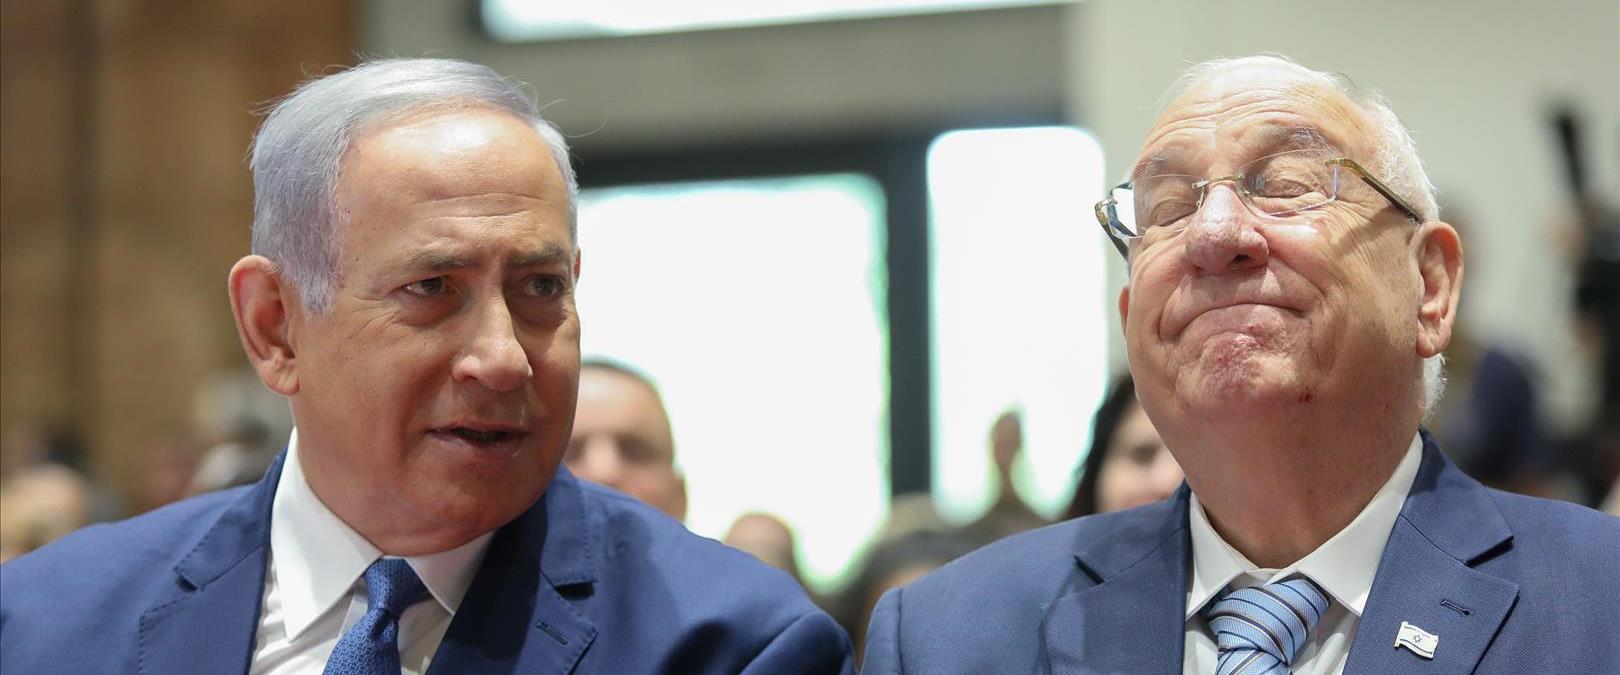 ריבלין נואם בטקס האזכרה לנשיאי וראשי ממשלות ישראל,